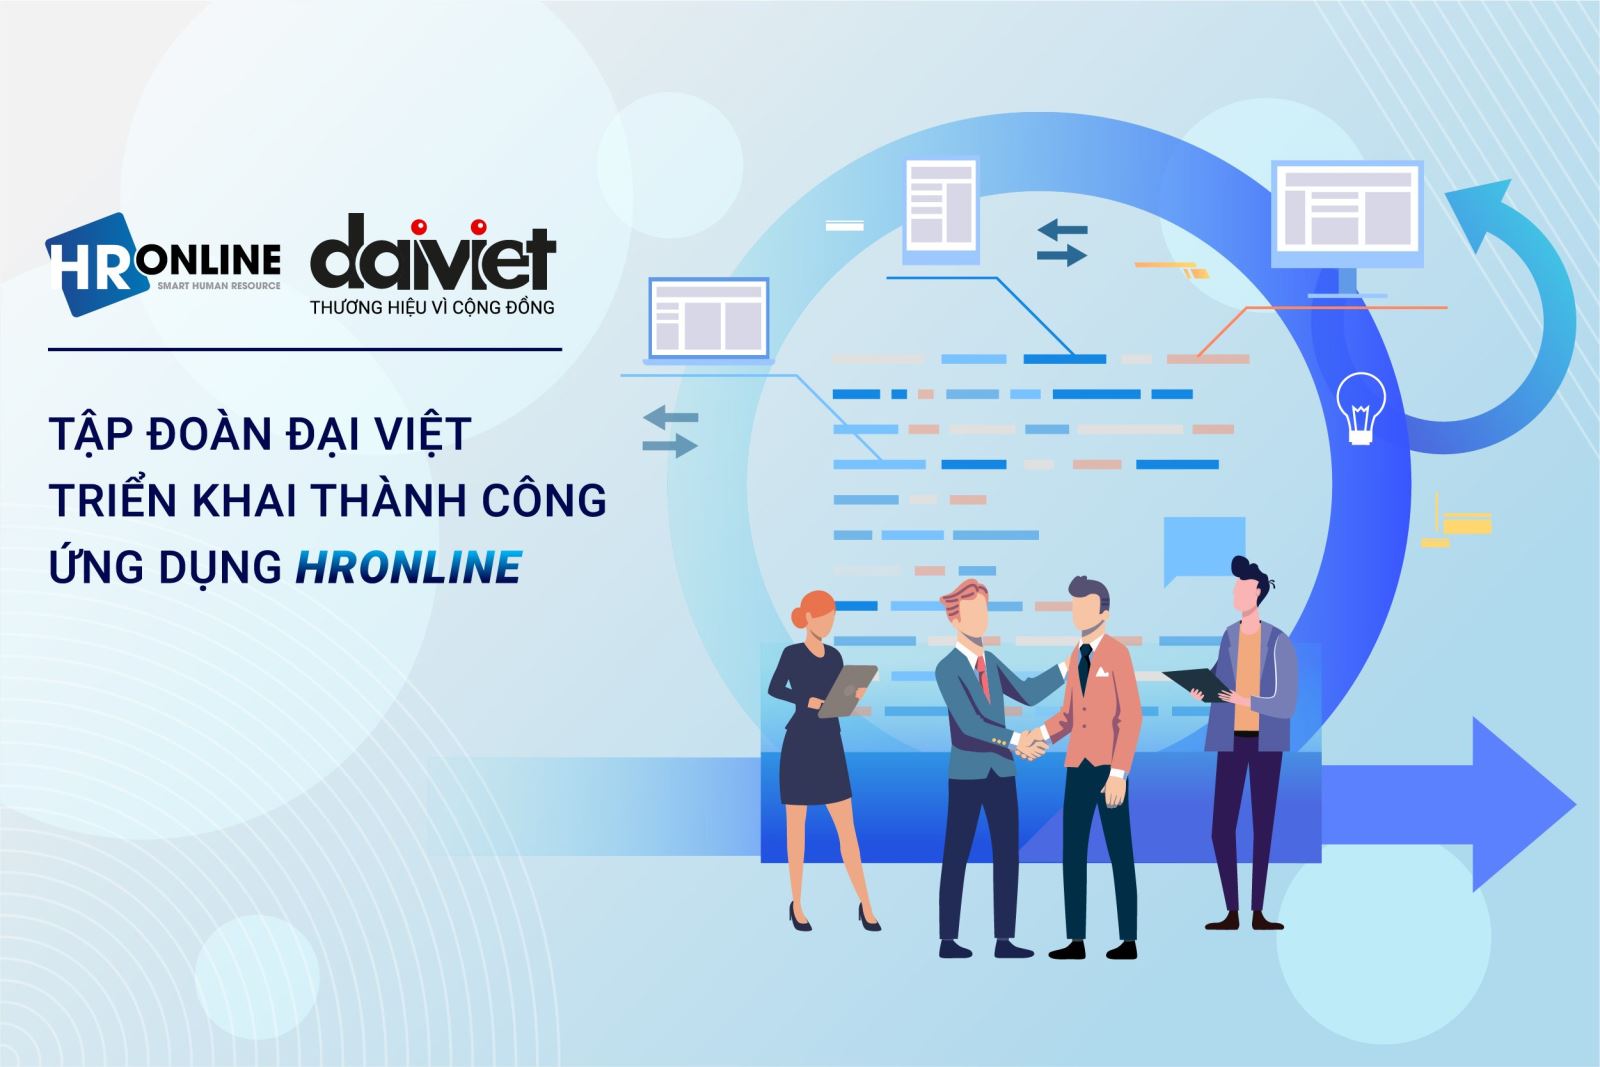 Triển khai thành công phần mềm HrOnline cho Đại Việt